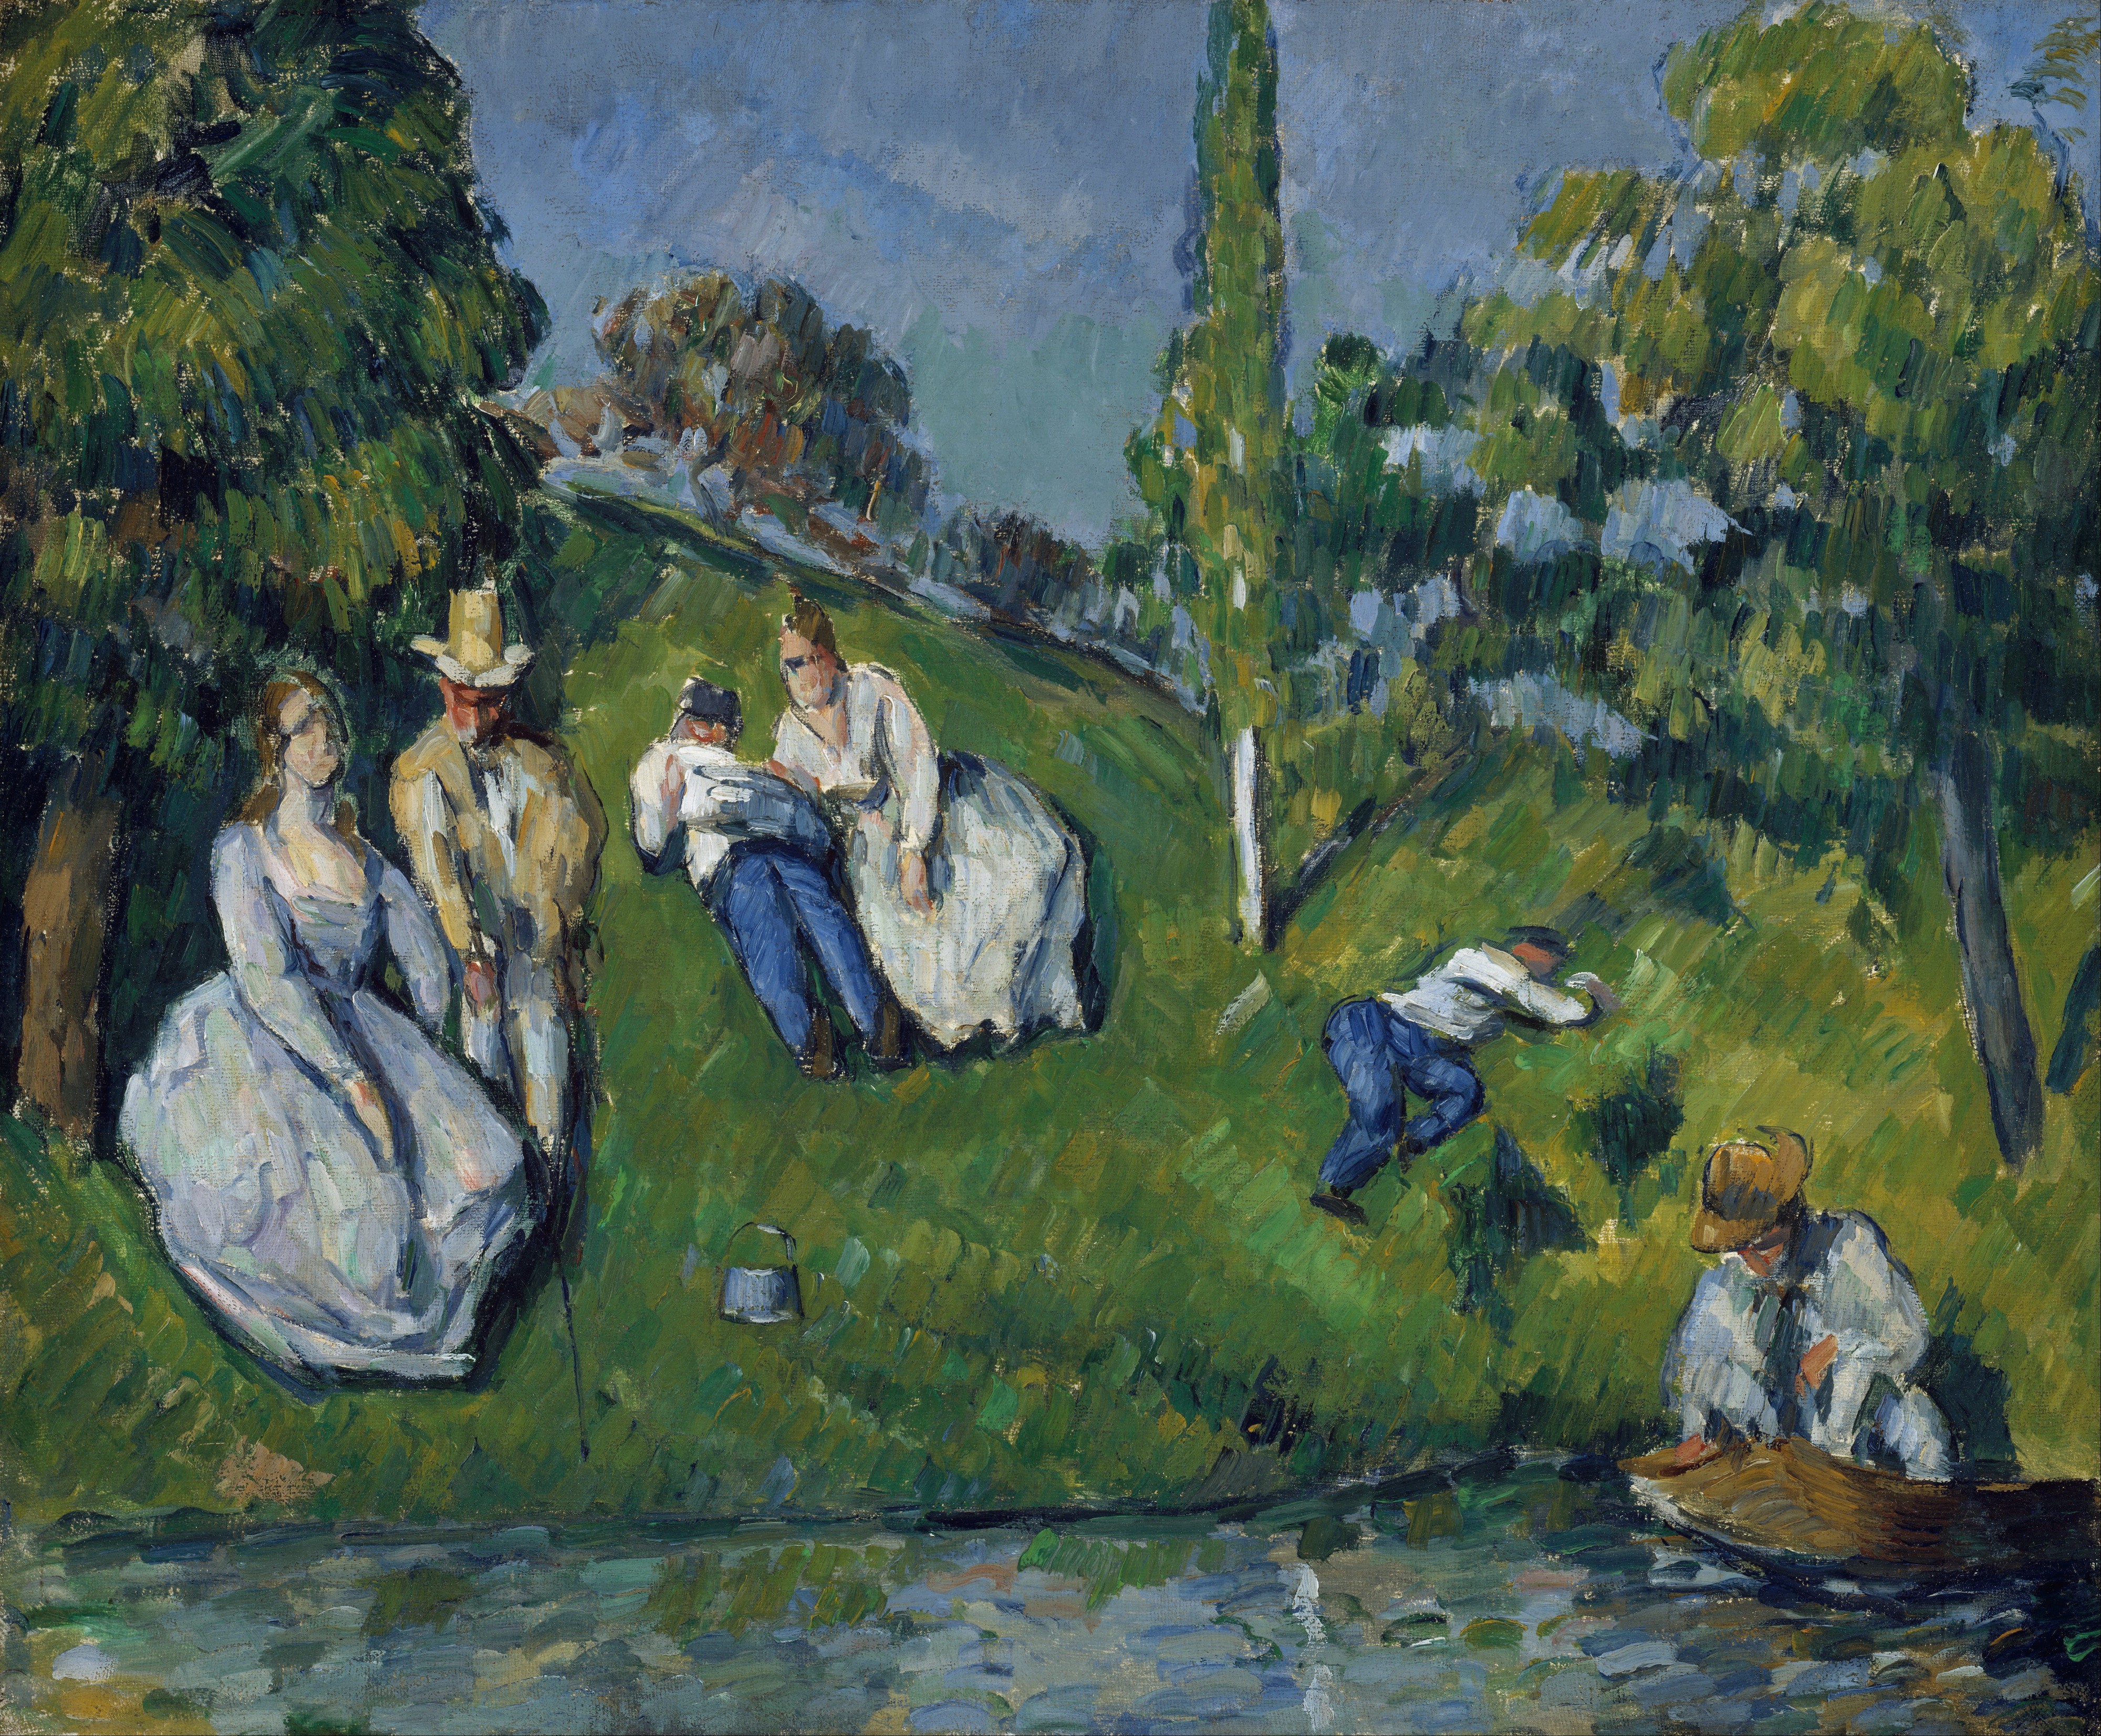 Paul Cézanne - The Pond - Google Art Project